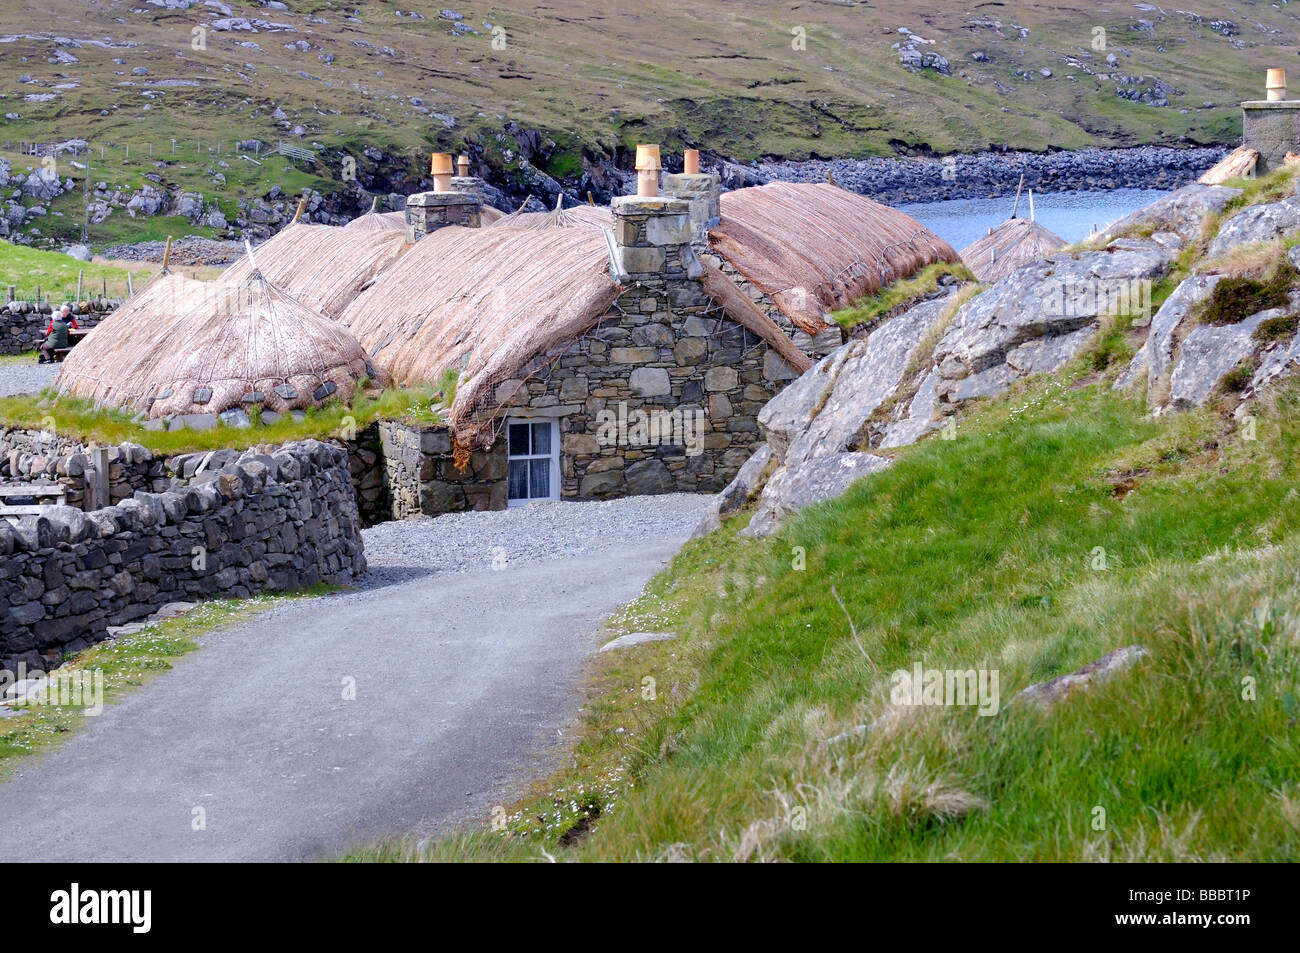 Con il tetto di paglia tradizionali blackhouse/s dell'isola di Lewis a Gearrannan village, Carloway, Western Isles, Scozia Foto Stock